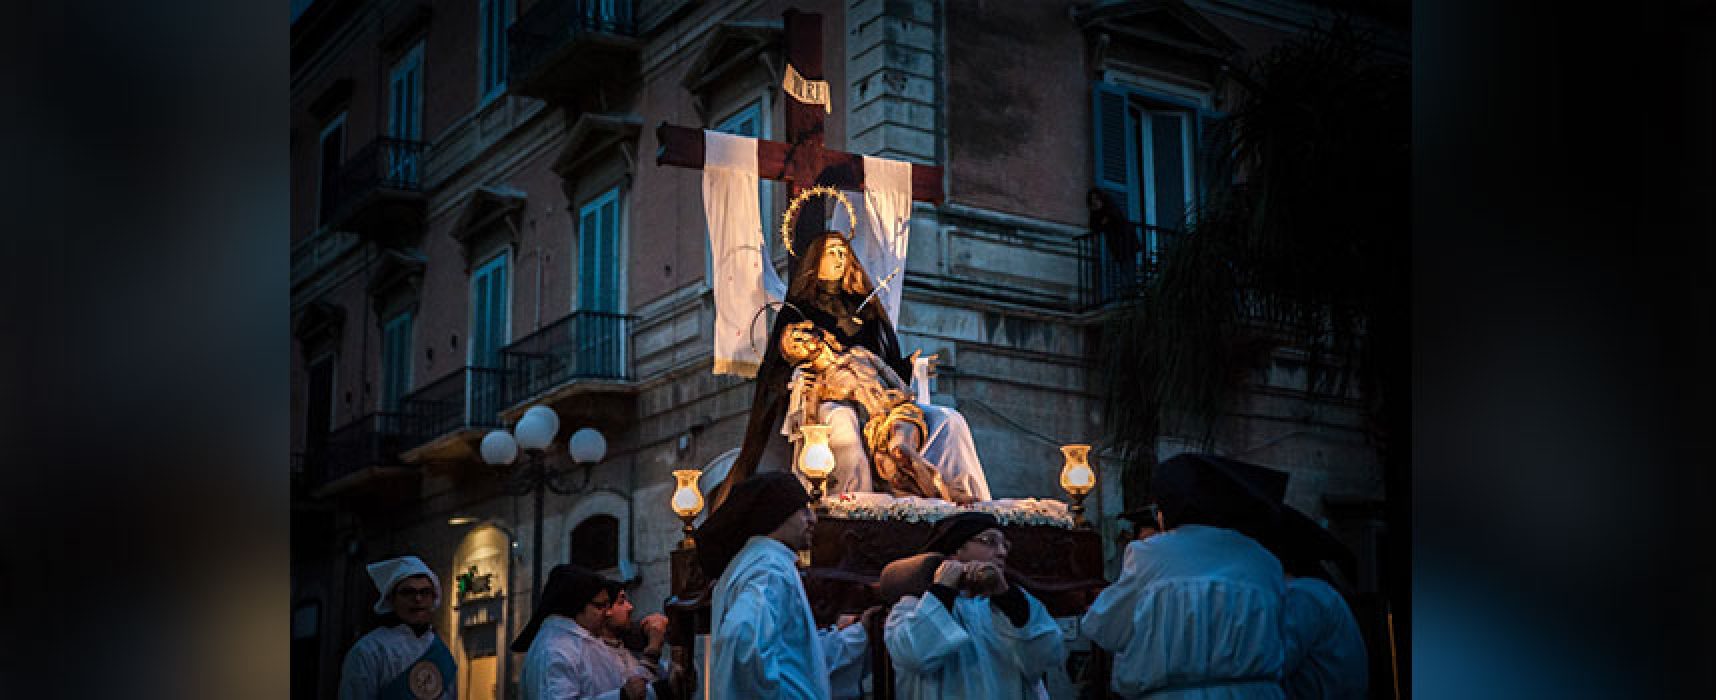 Statua Madonna della Pietà in disfacimento, avviate iniziative per il restauro